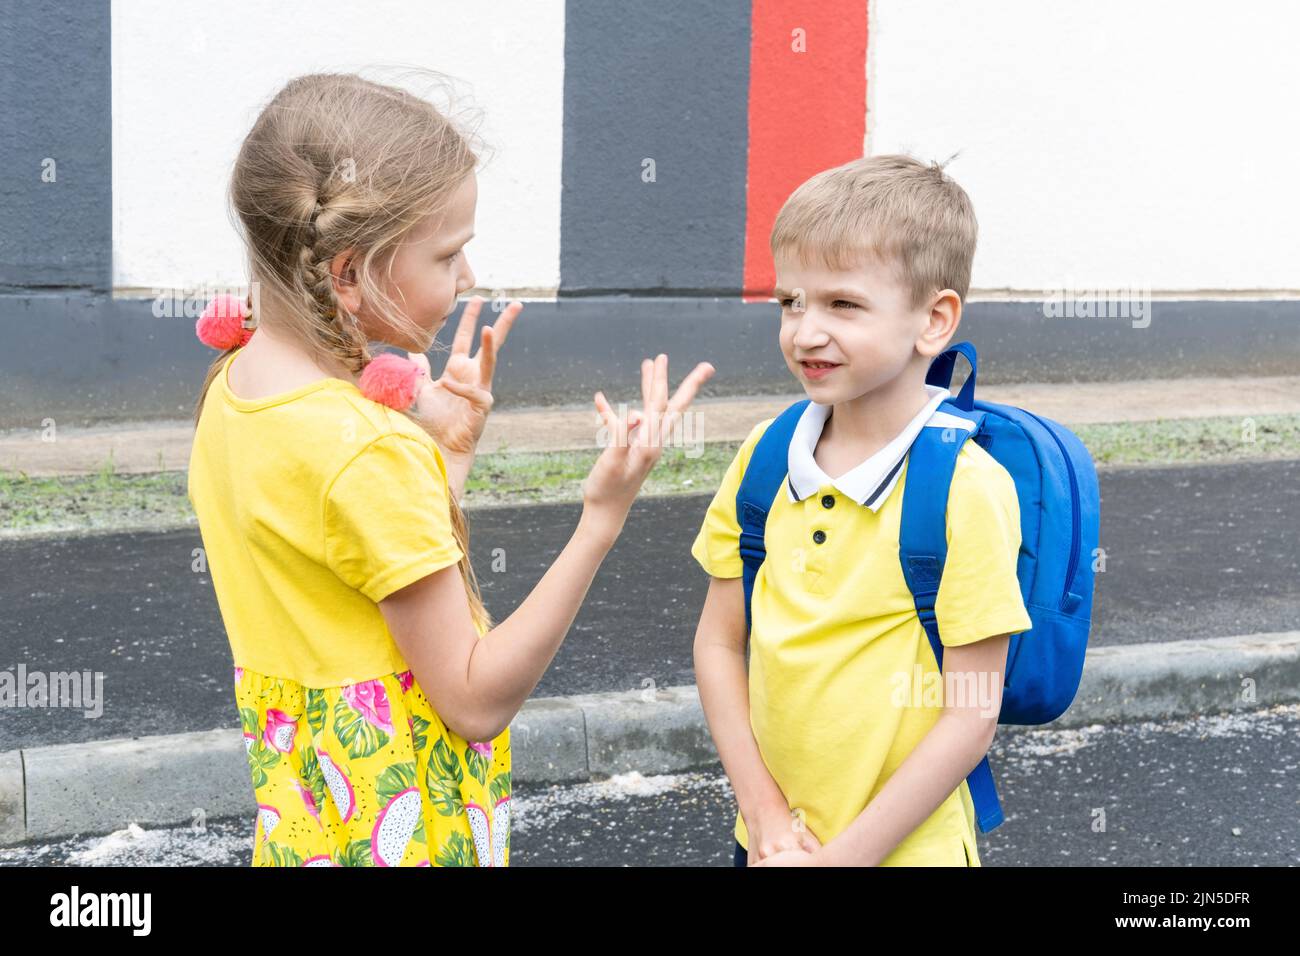 De vuelta a la escuela. La hermana mayor le dice gestos al hermano menor con una mochila escolar. Los niños se comunican antes de la escuela. Foto de stock